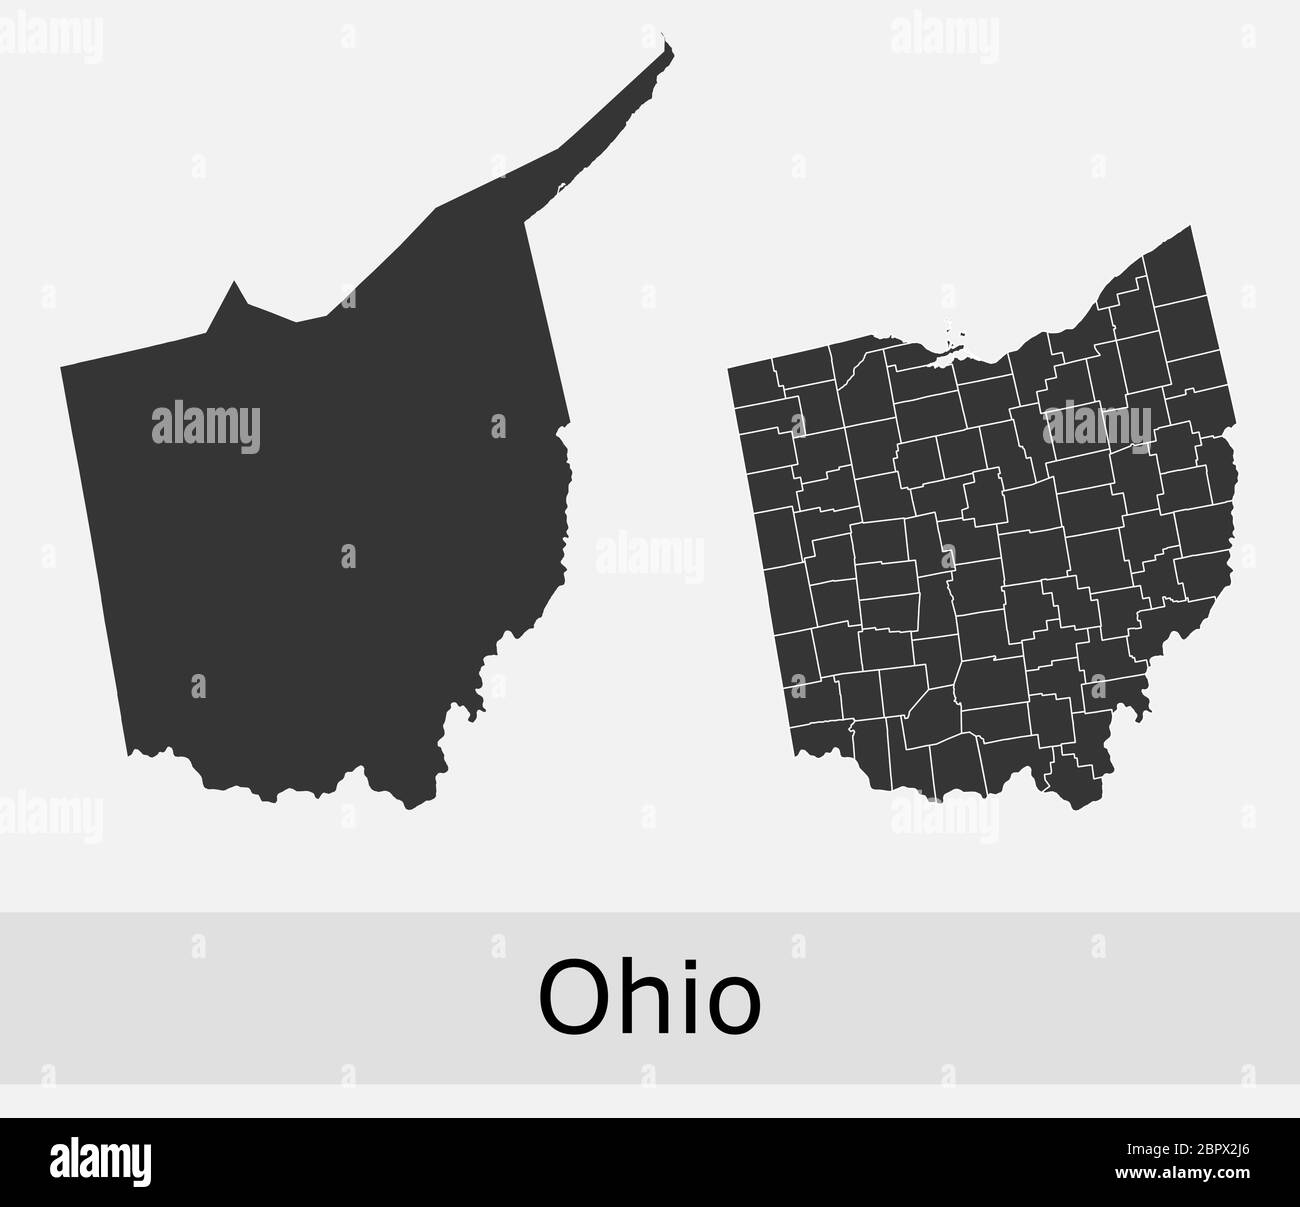 Cartes de l'Ohio vector Outline comtés, townships, régions, municipalités, départements, frontières Illustration de Vecteur